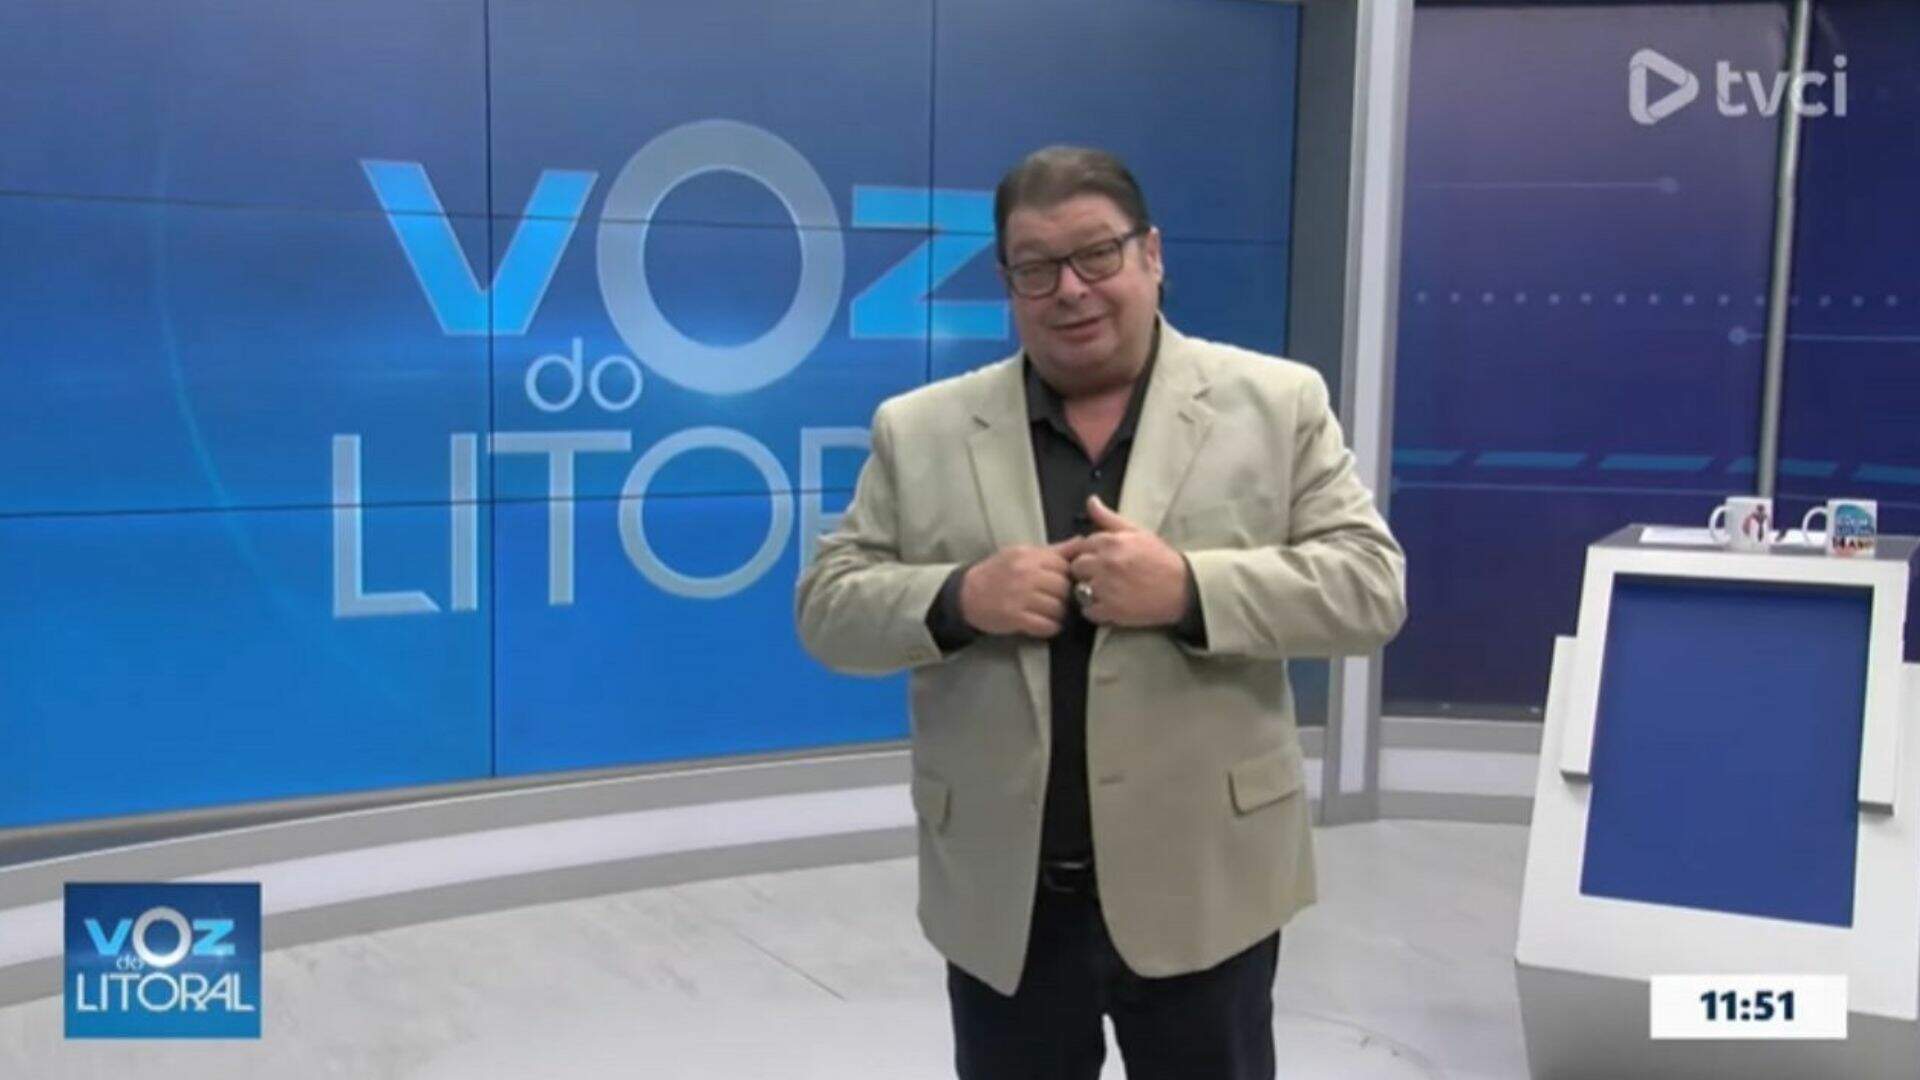 Climão! Ao vivo, apresentador culpa vítimas de assédio e emissora toma atitude inesperada - Metropolitana FM